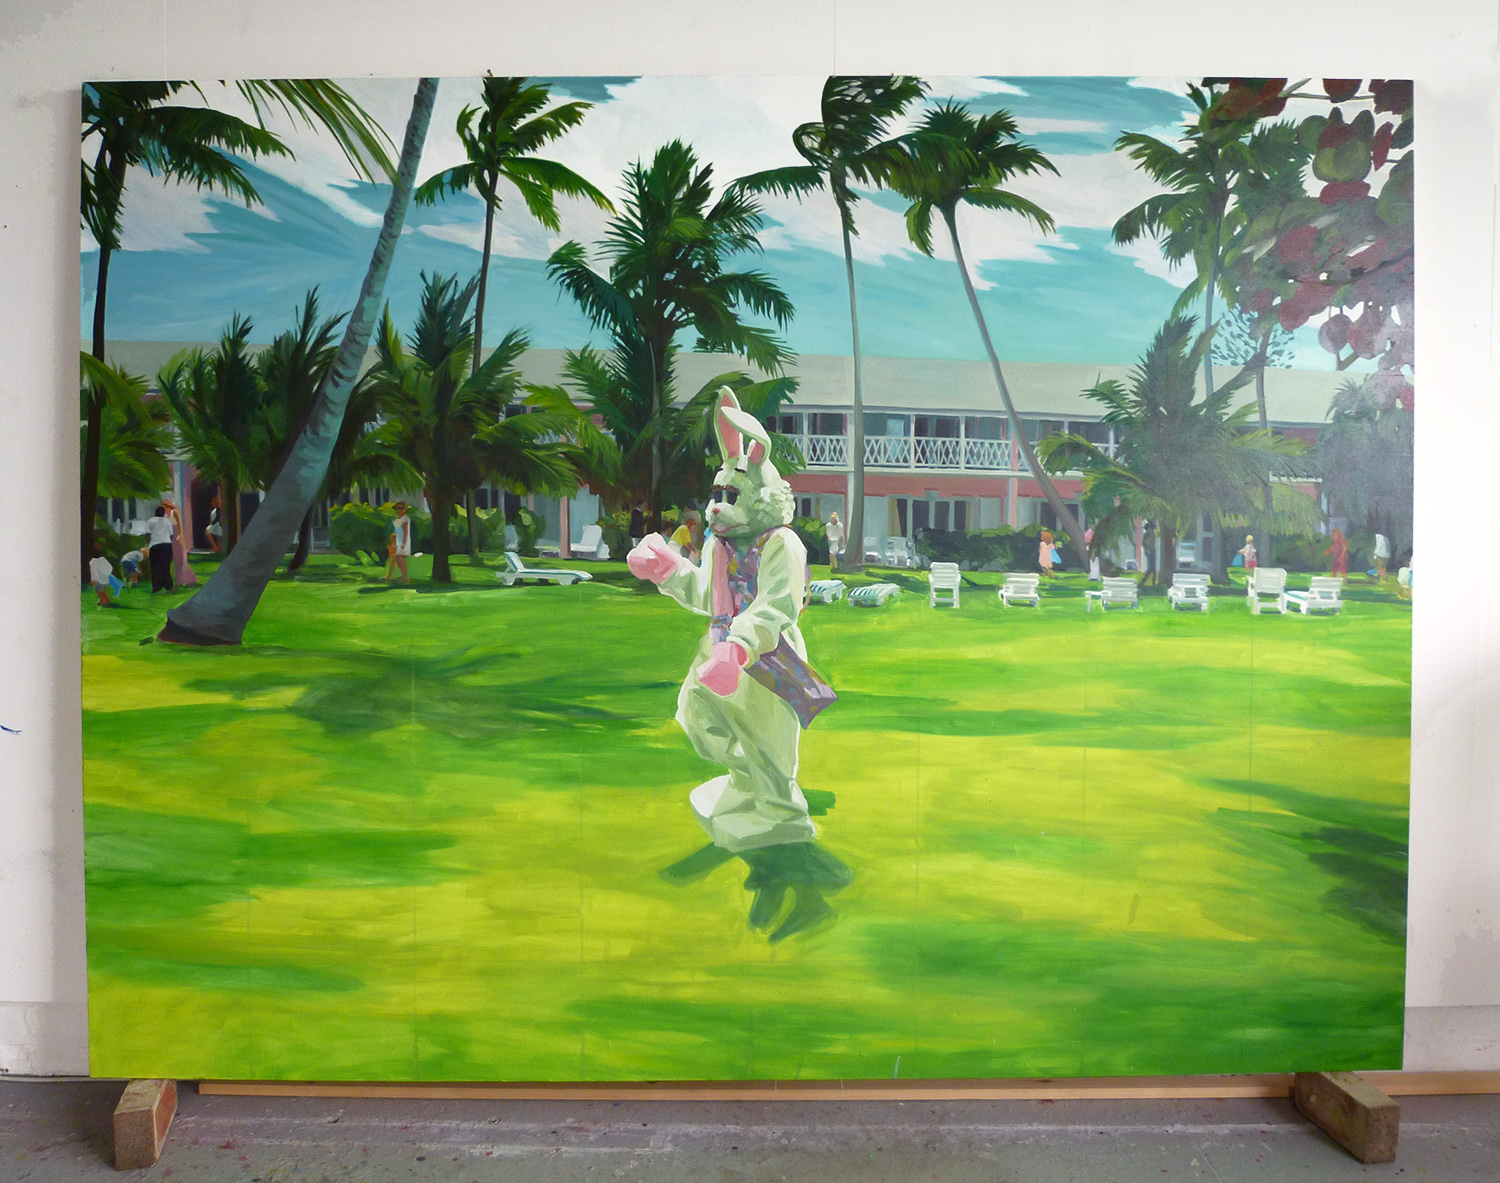  Bunny, 2010  oil on canvas  180 x 240 cm 